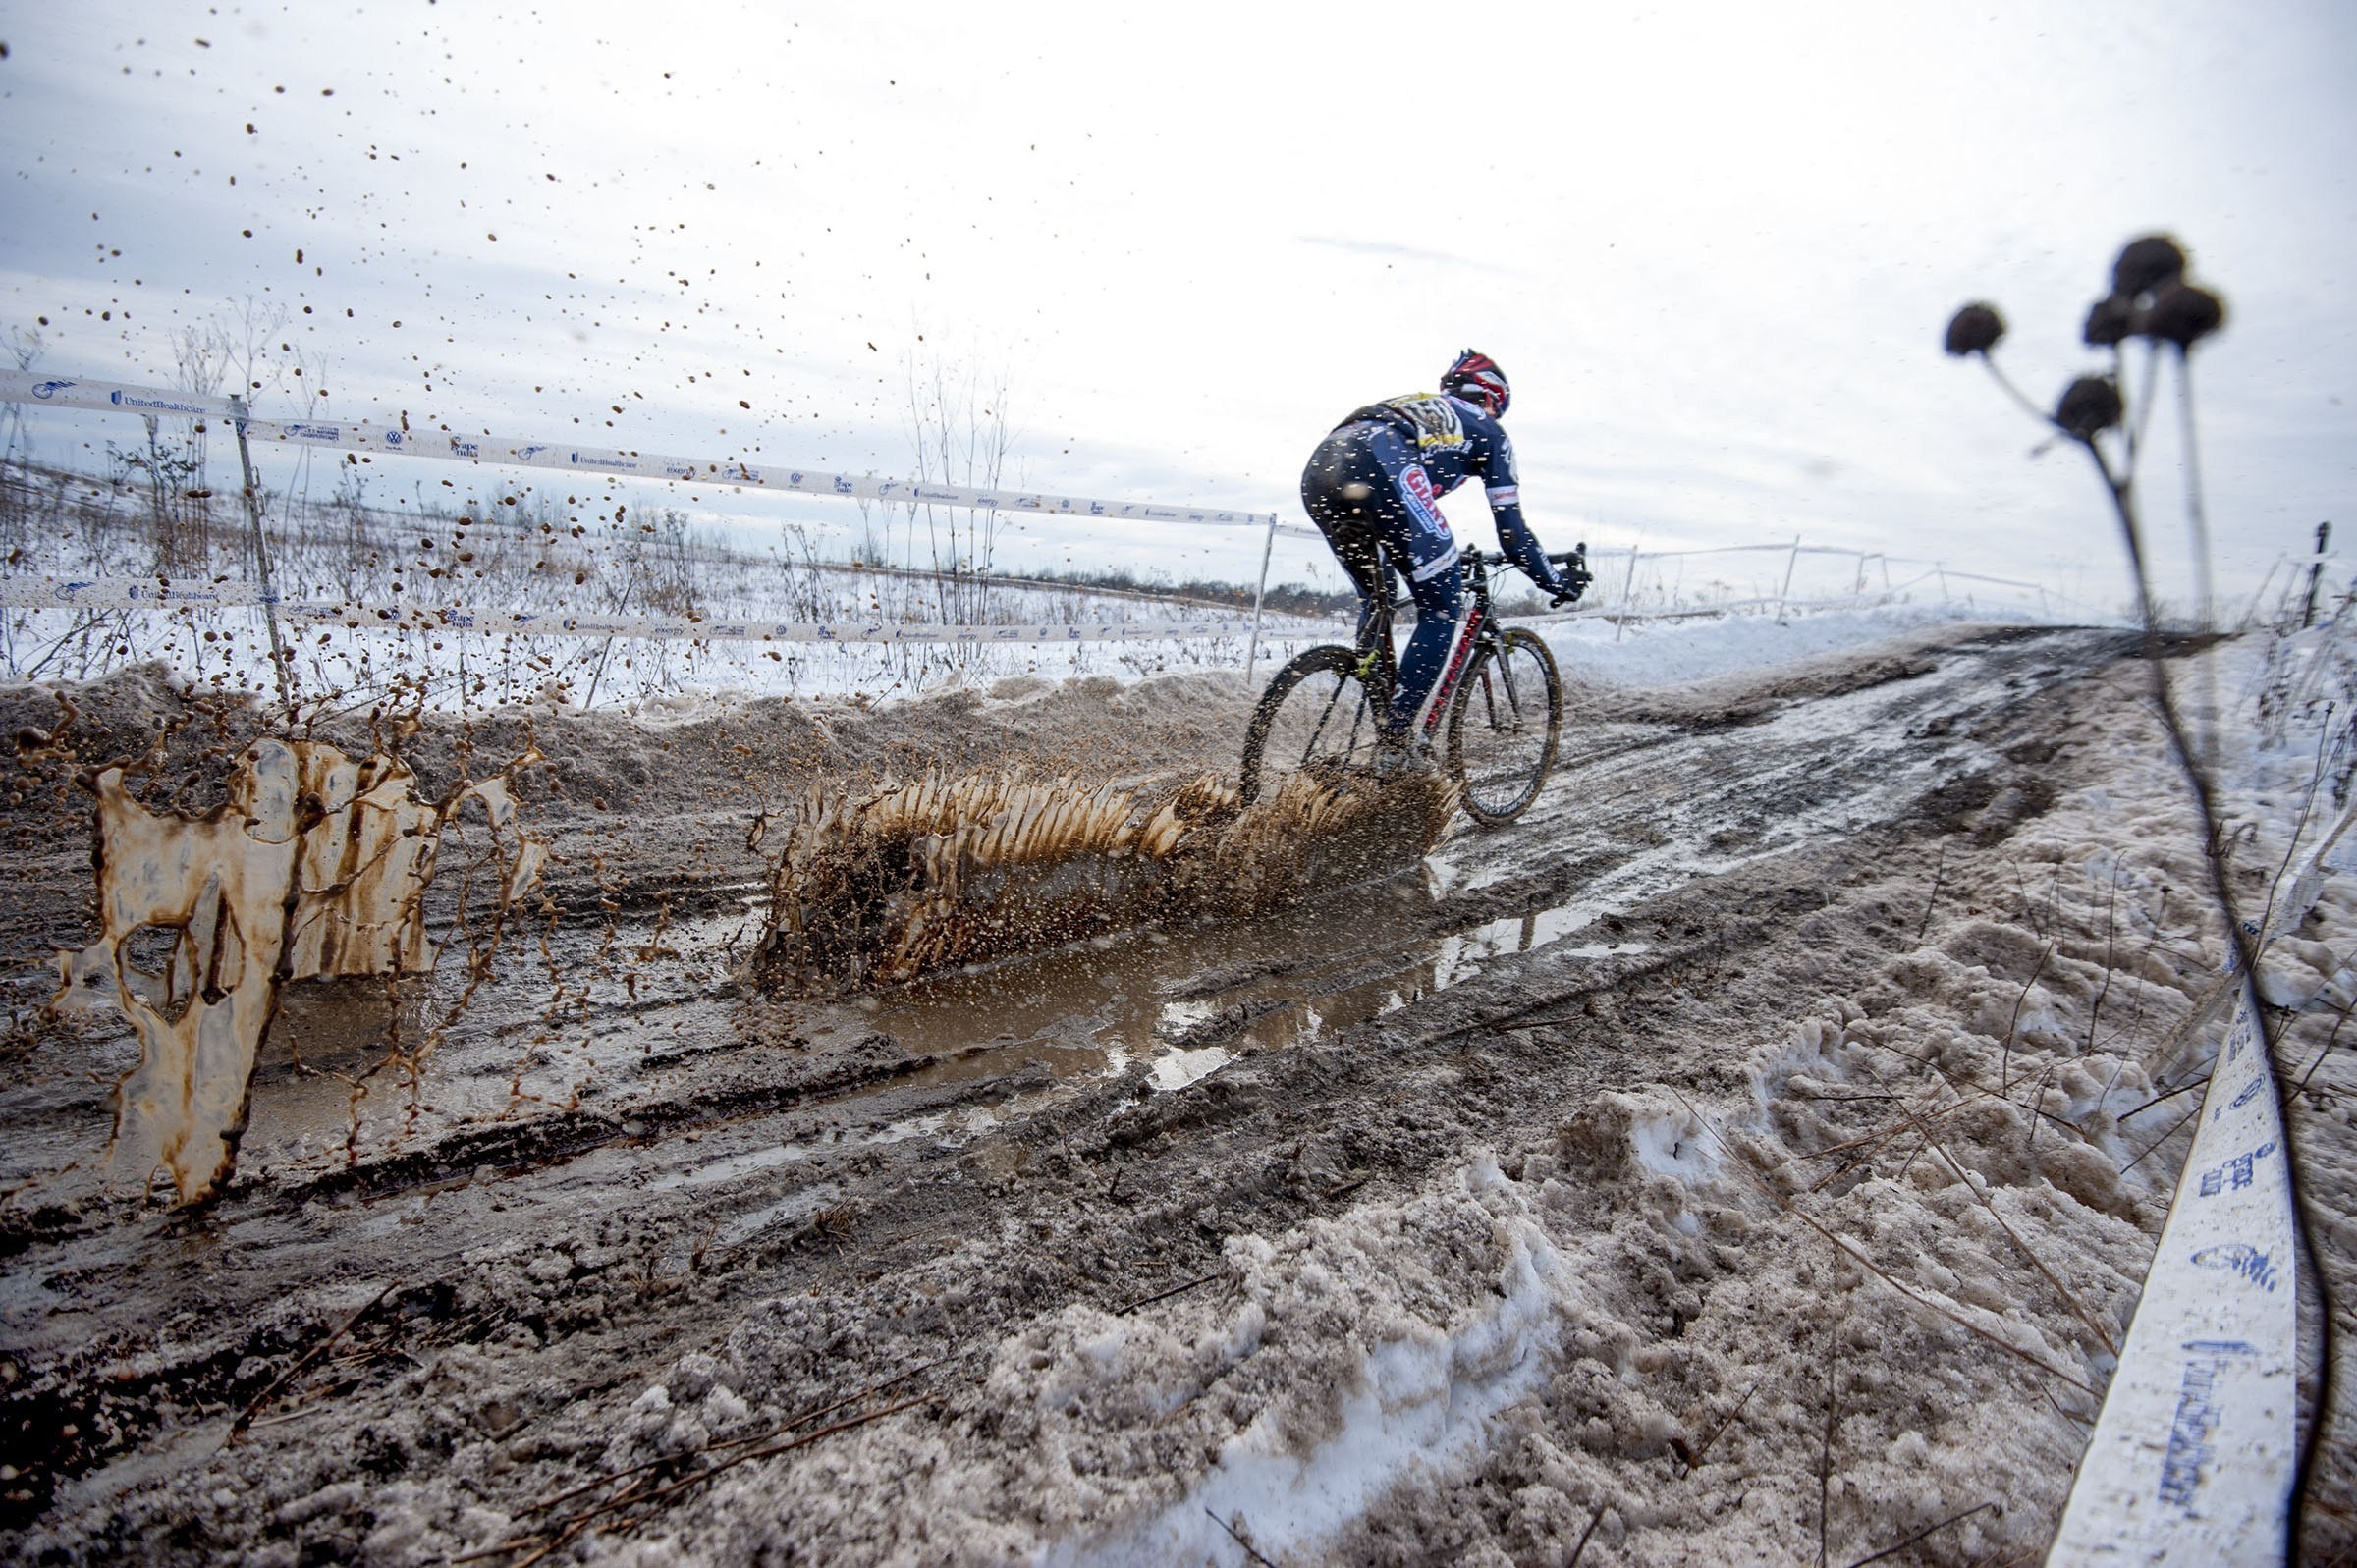 General 2400x1597 mud bicycle dirt vehicle sport